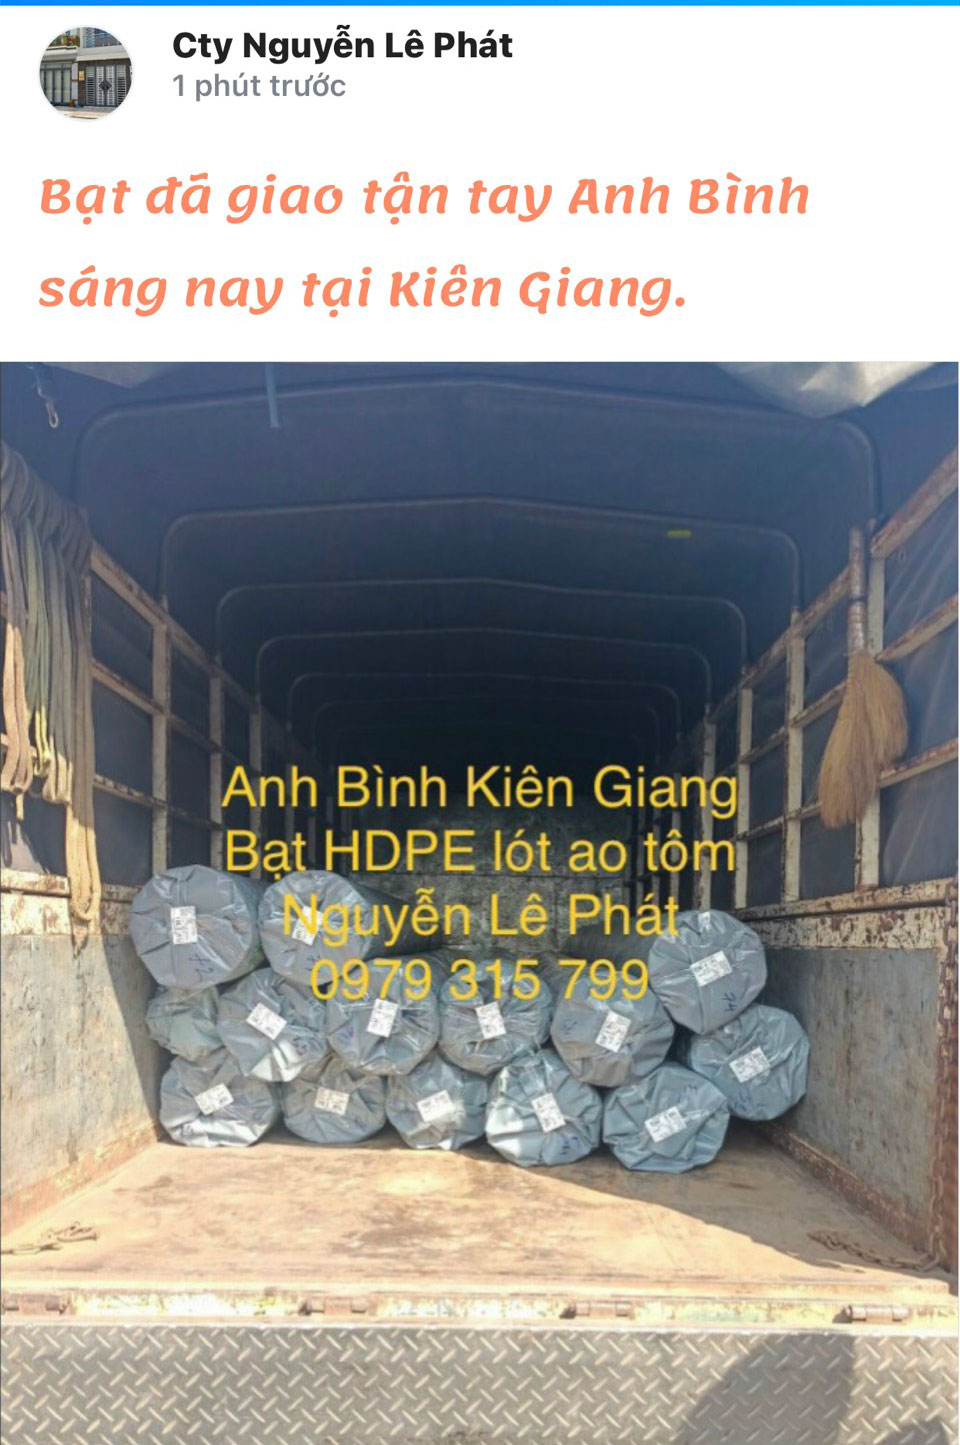 Kho bạt nhựa HDPE Nguyễn Lê Phát